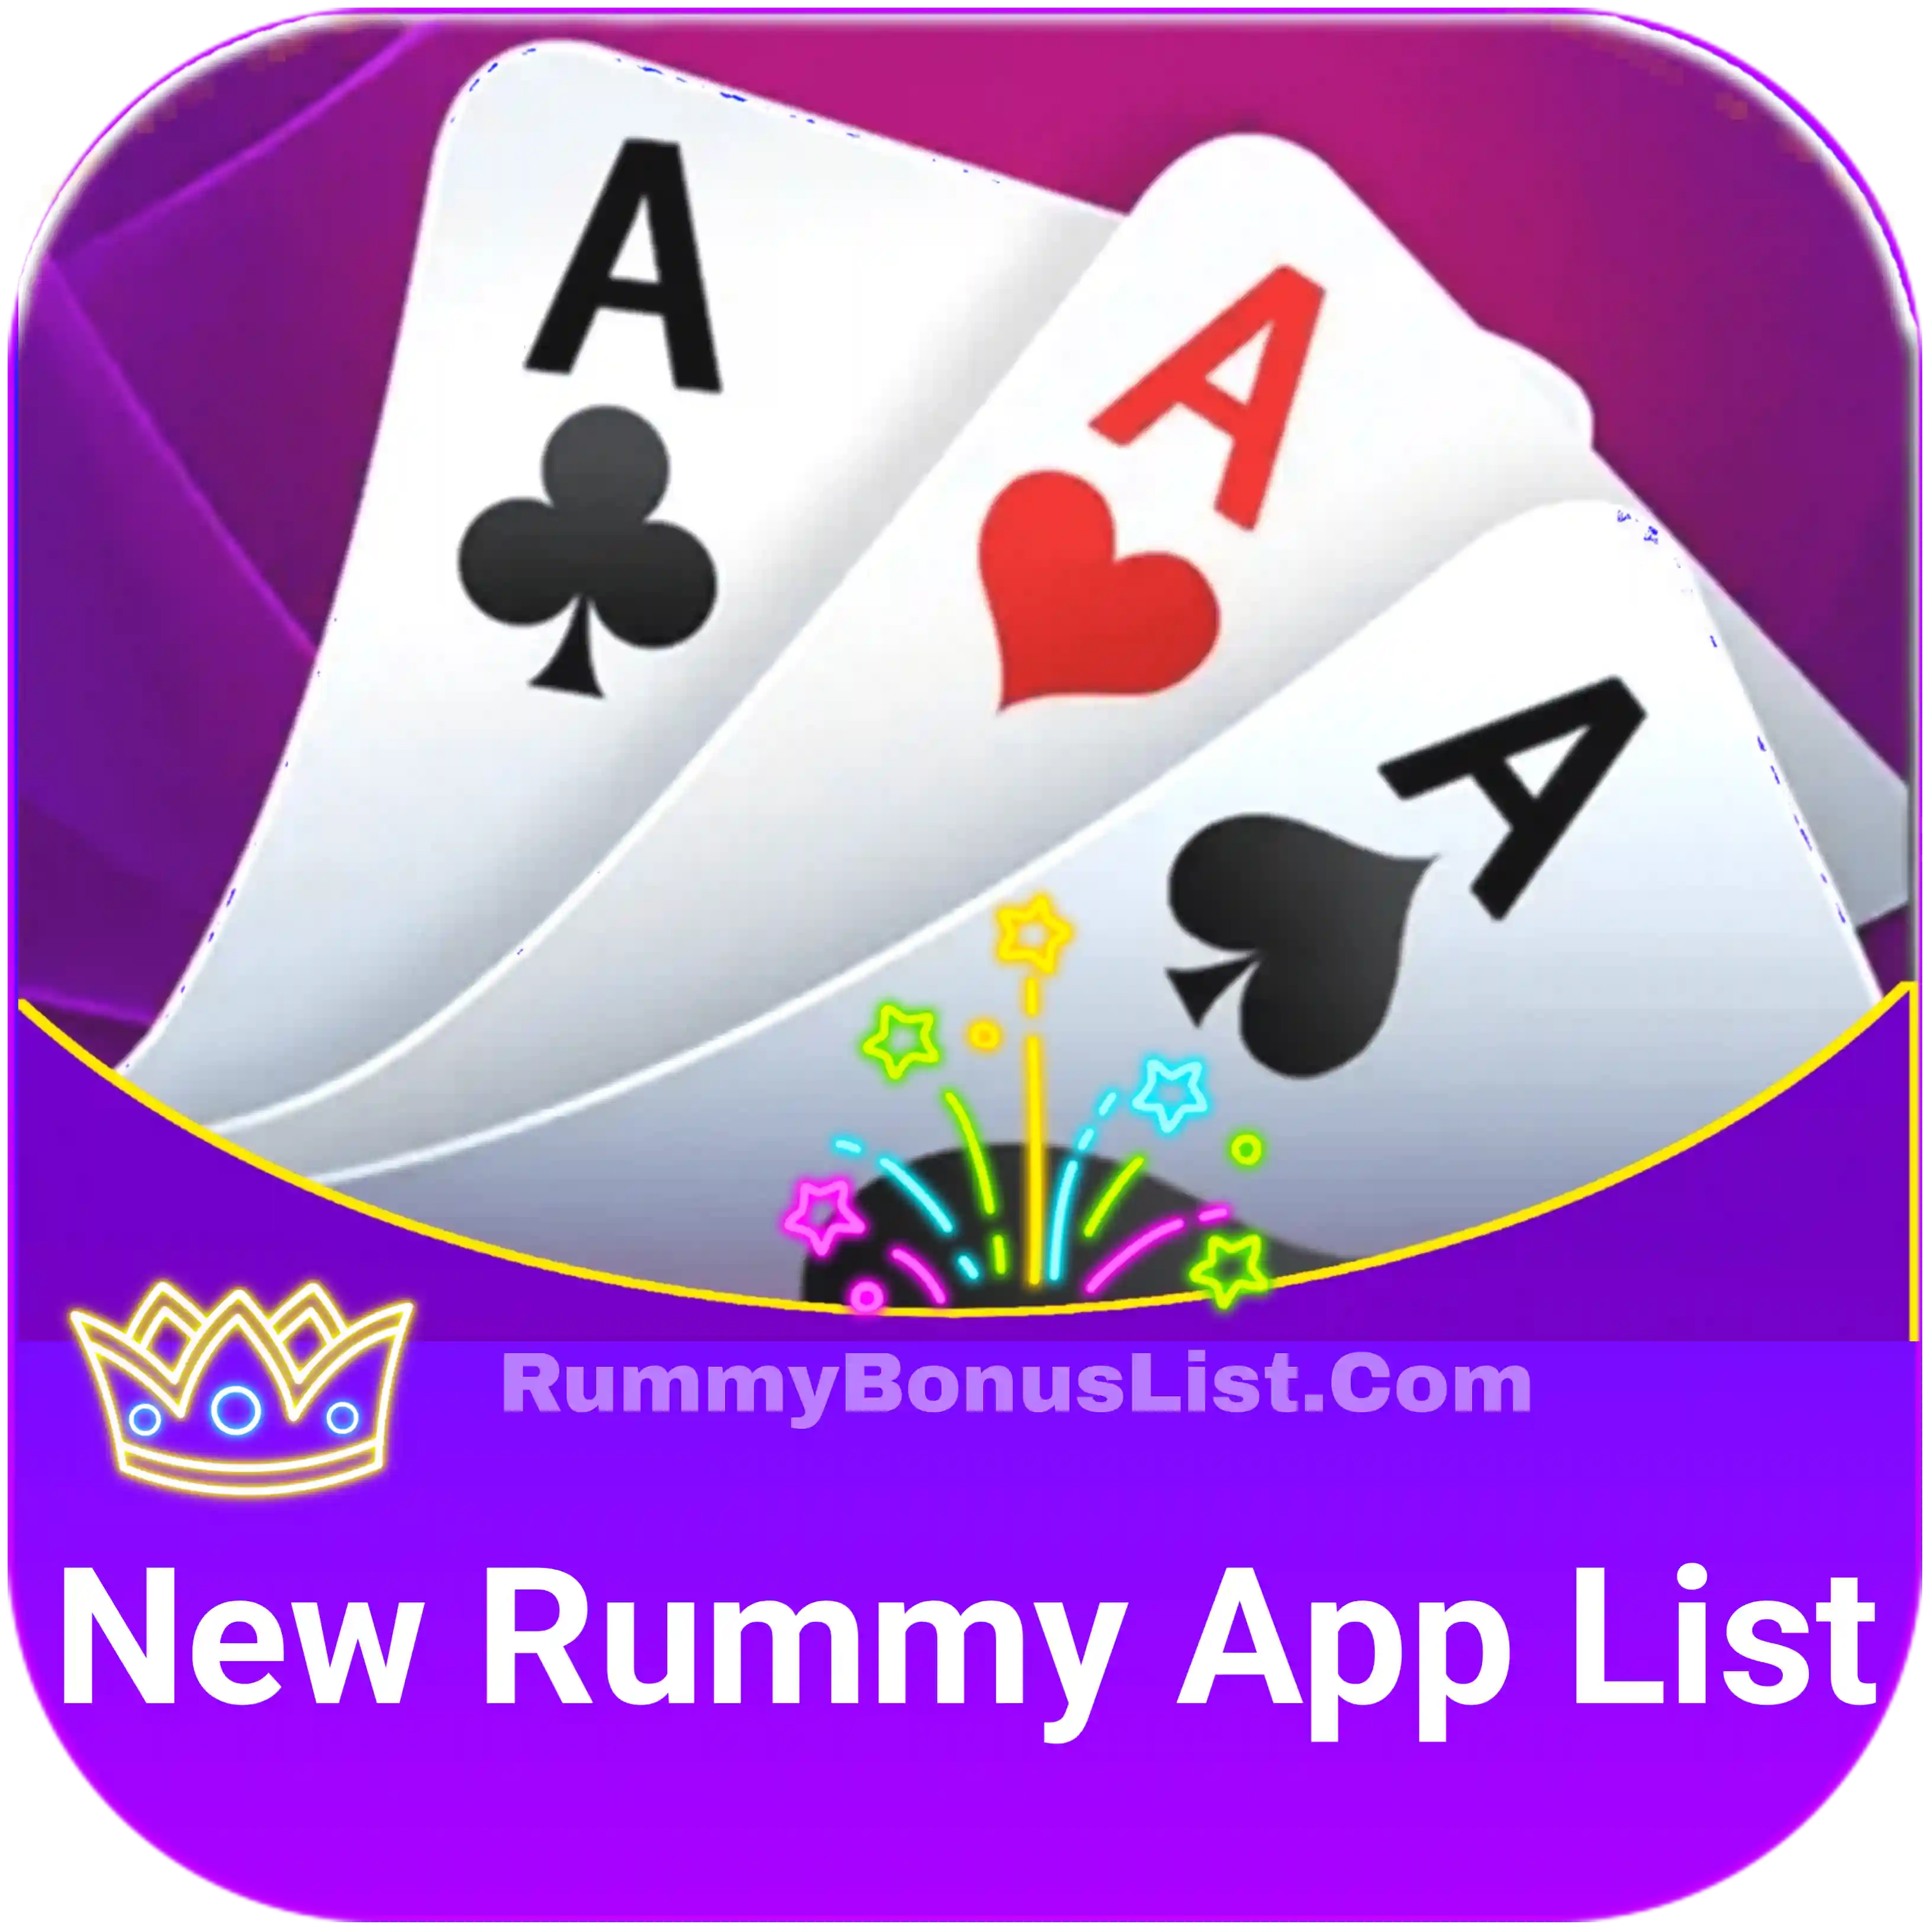 All Rummy App List